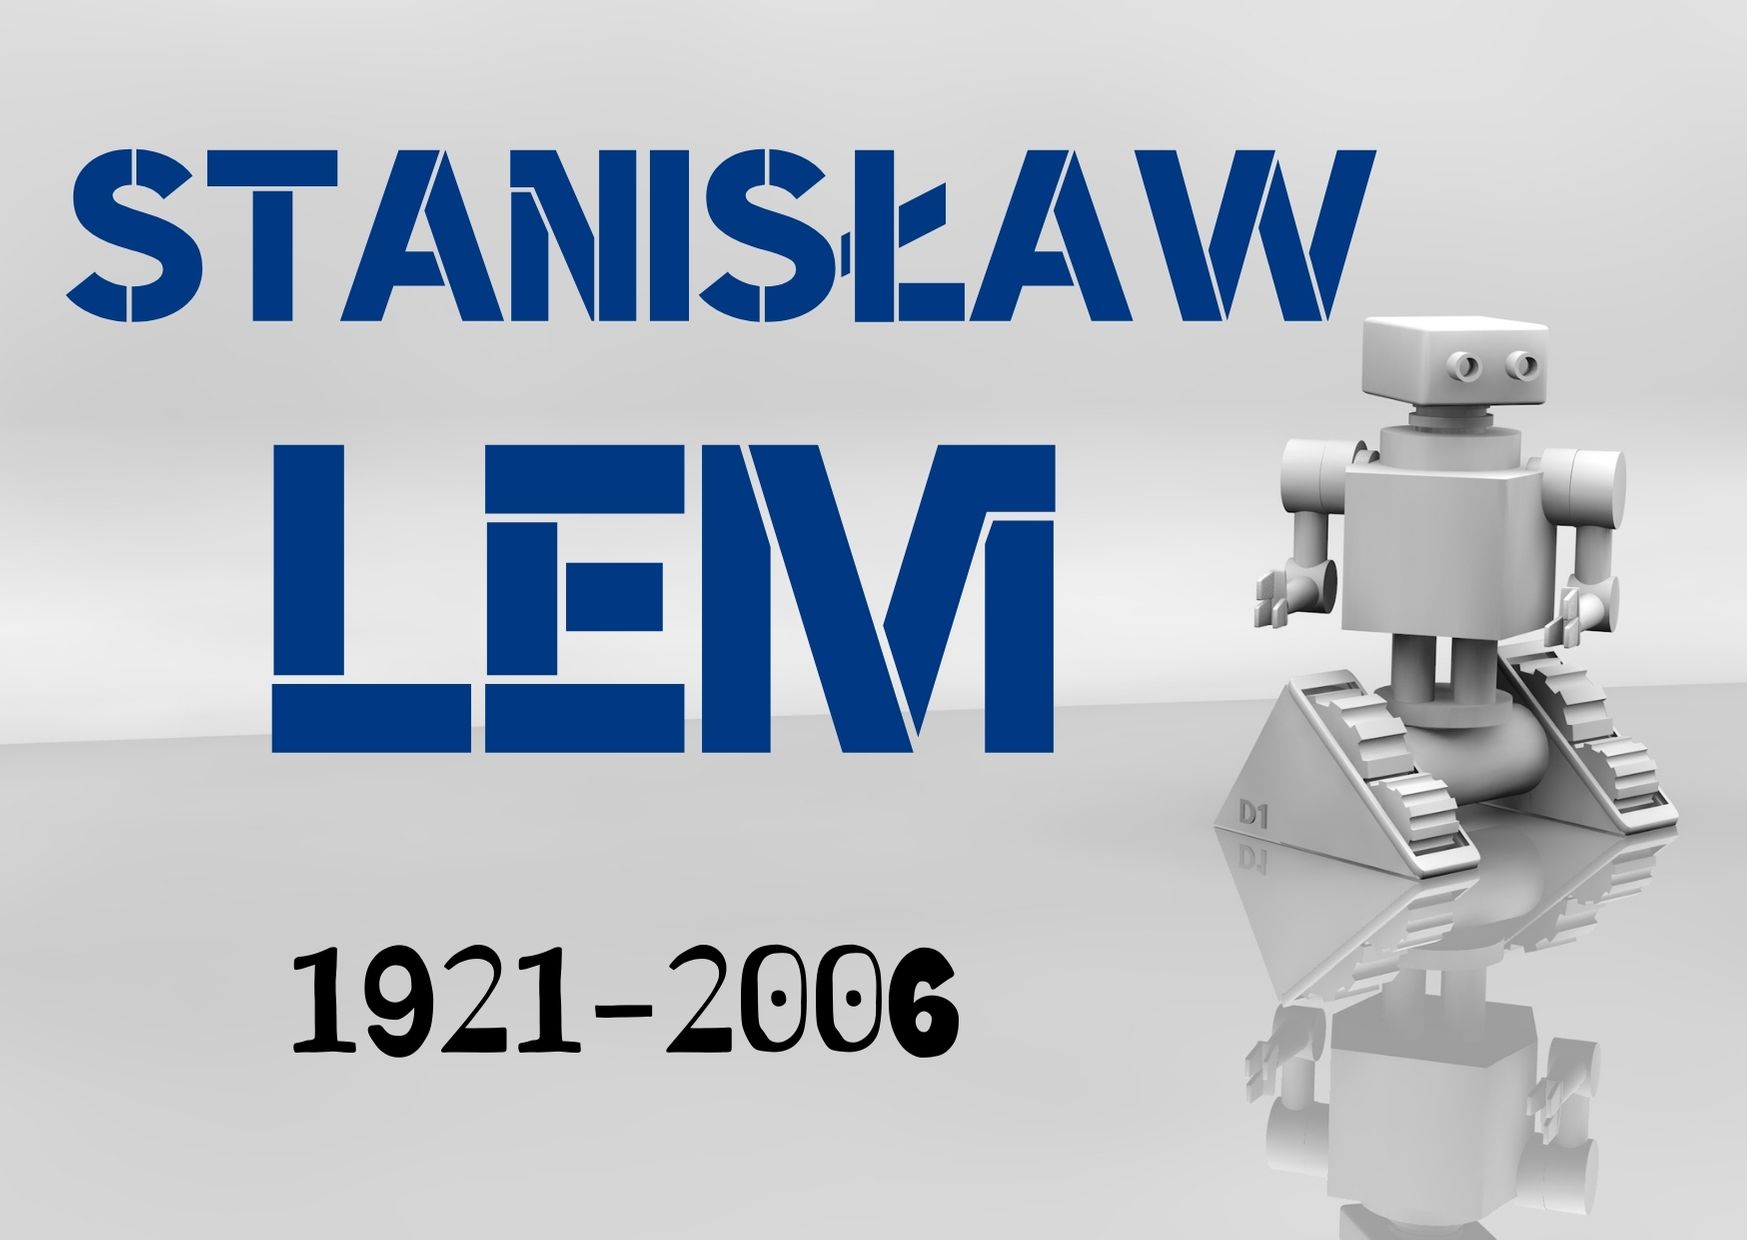 Na szarym tle niebieski napis: Stanisław Lem i czarny dopisek: 1921-2006. Po prowej stronie rysunek przedstawiający robota.